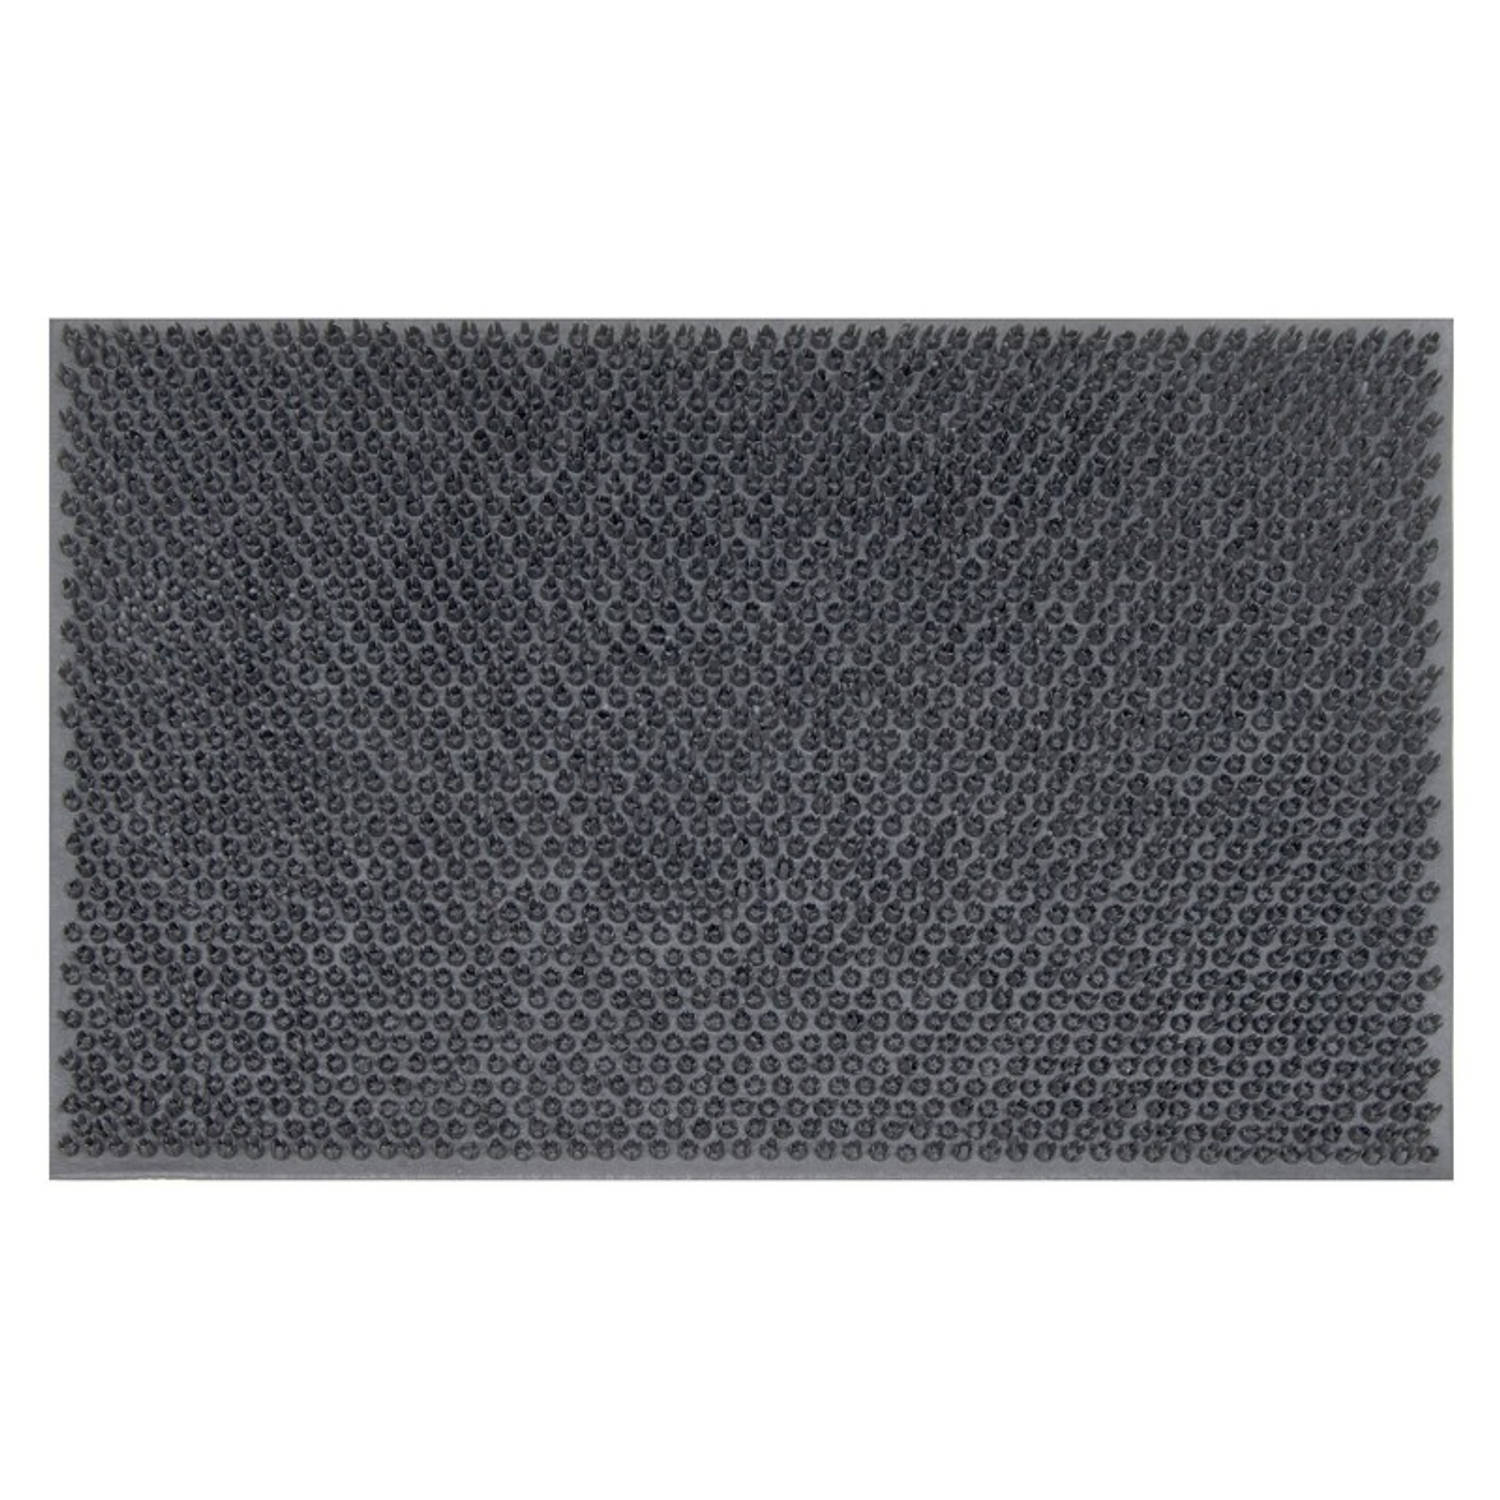 Tragar deurmat van volledig rubber met antislip - Voor binnen en buiten - Schoonloopmat - 40 x 60 cm grijs